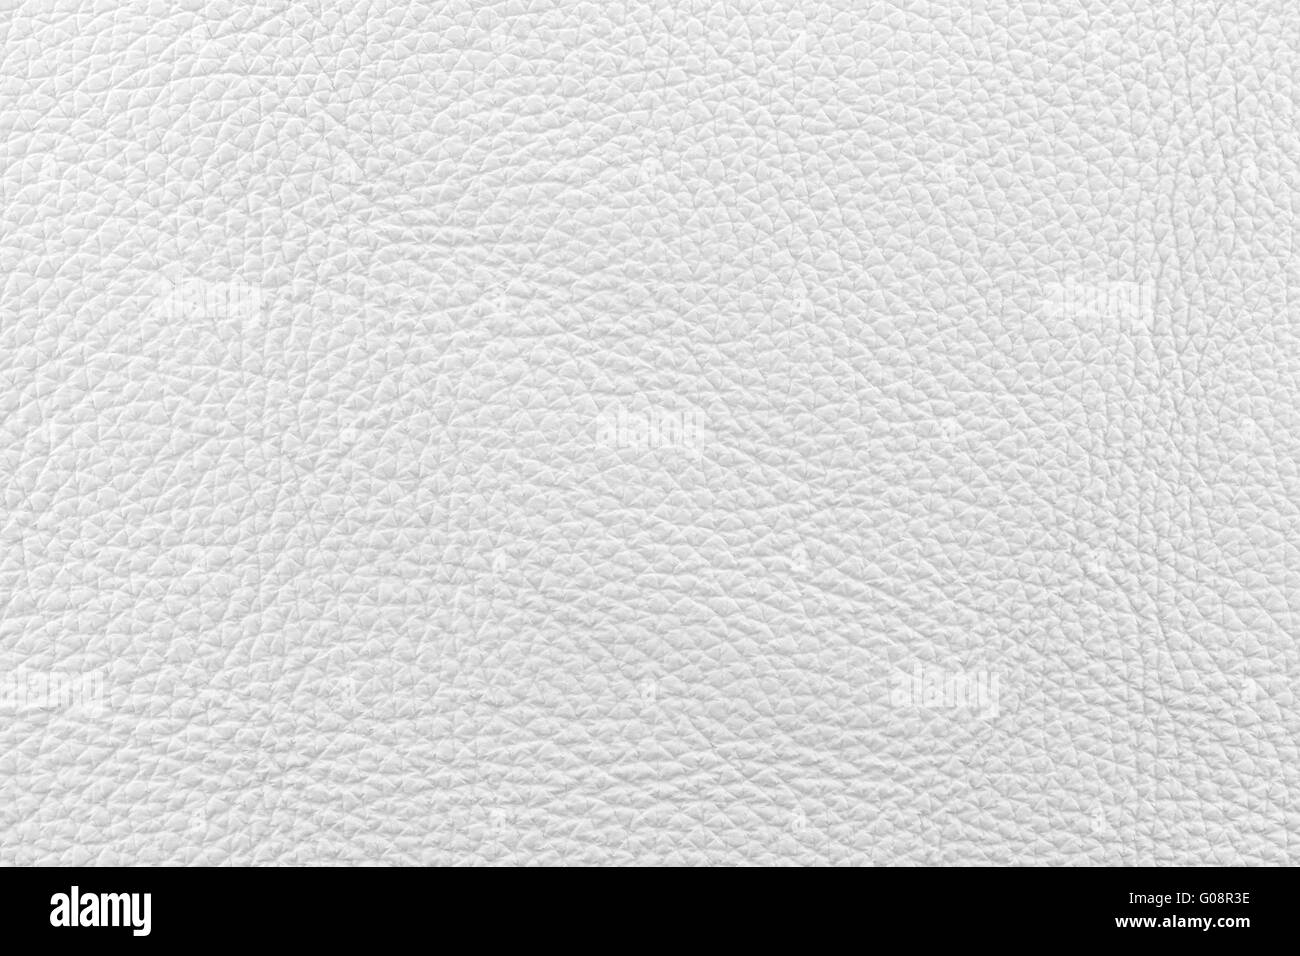 Leather nappa white texture Stock Photo